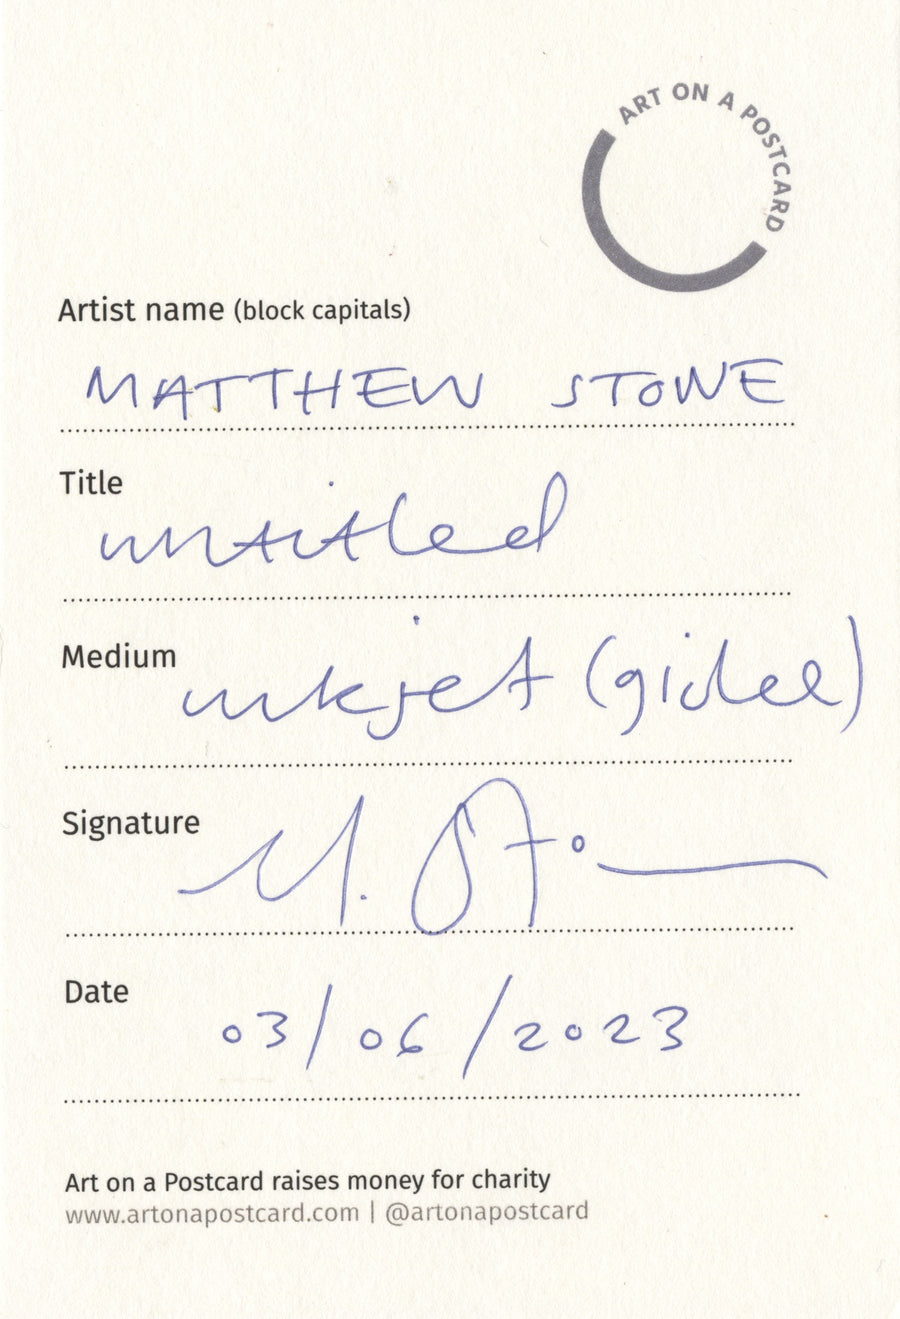 Lot 297 - Matthew Stone - Untitled (2)